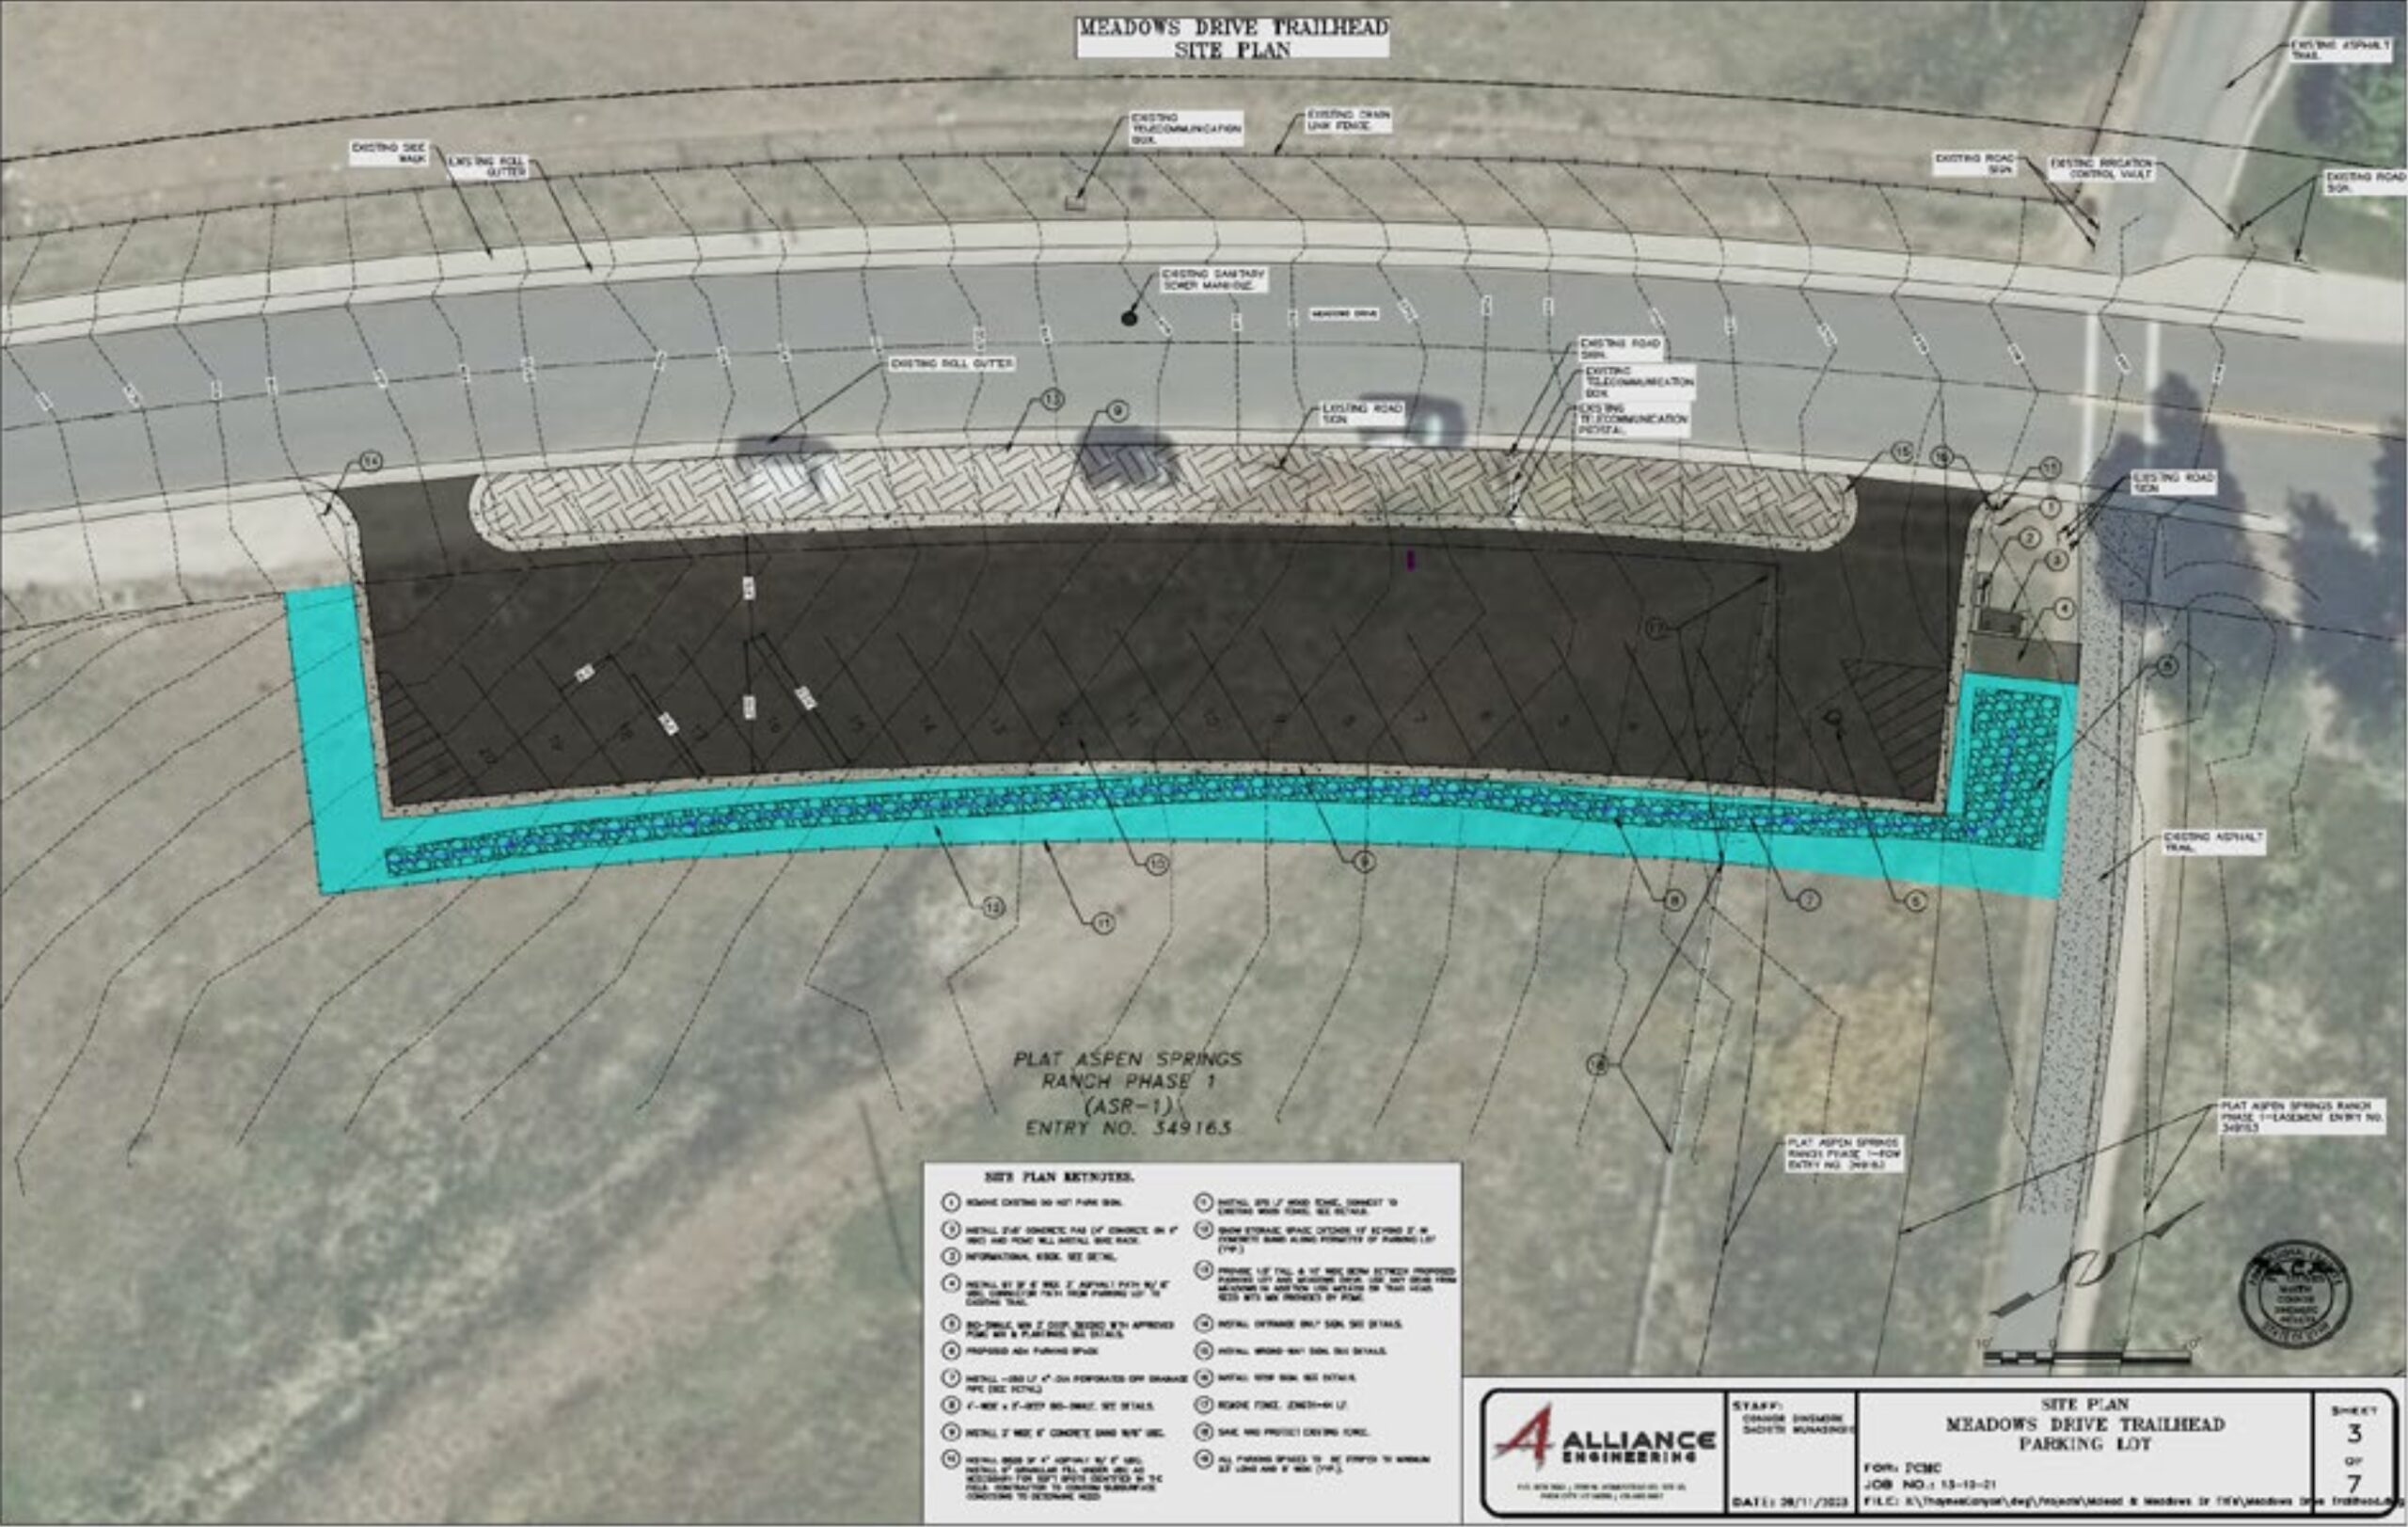 Meadows Drive Trailhead site plan. Image: Park City Municipal